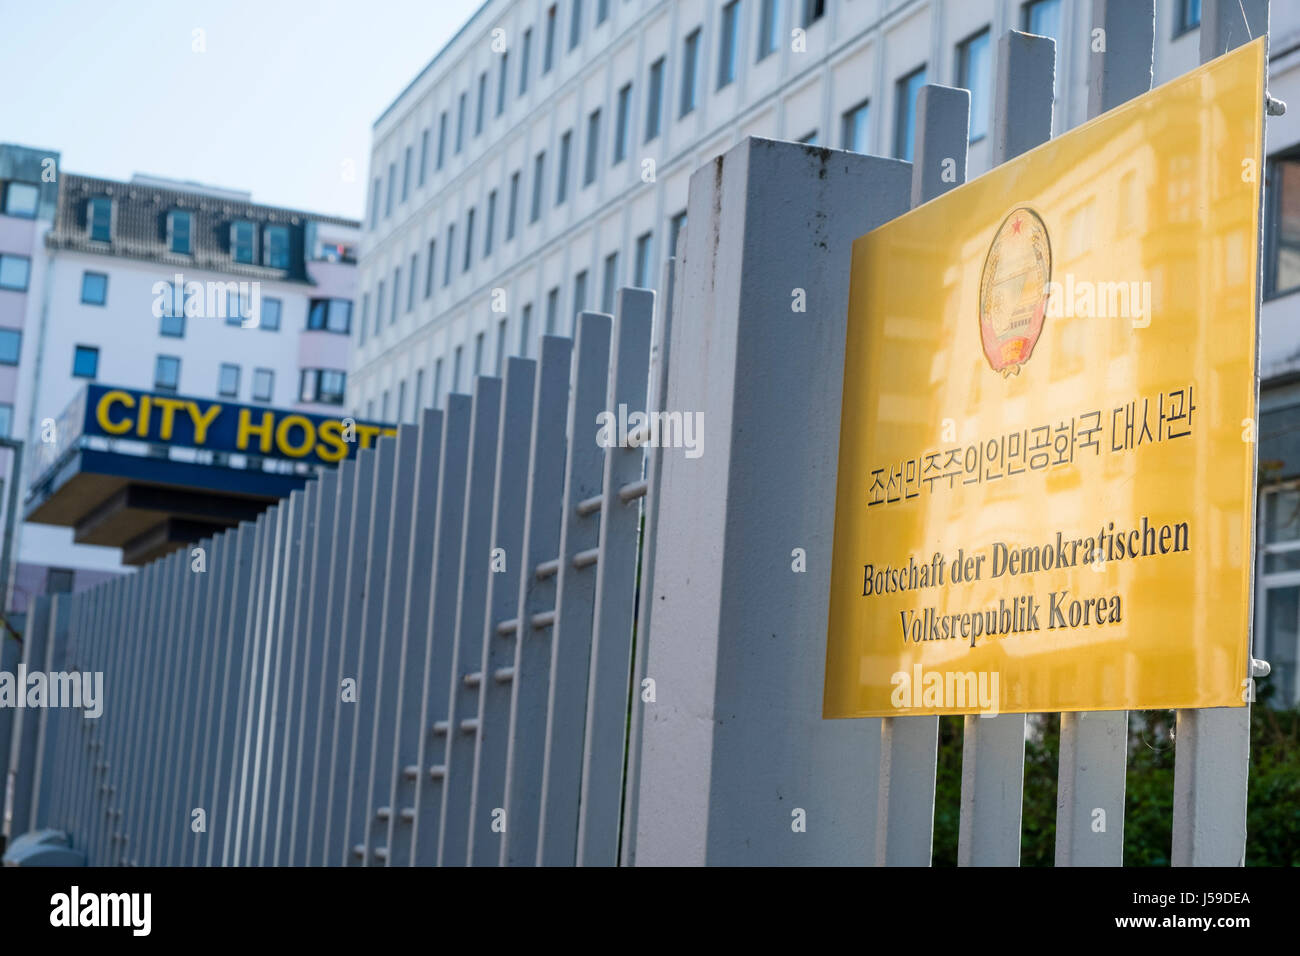 Vista esterna del City Hostel a Berlino si trova vicino a North Korean Embassy che polemicamente possiede e affitta la costruzione in contraventi Foto Stock